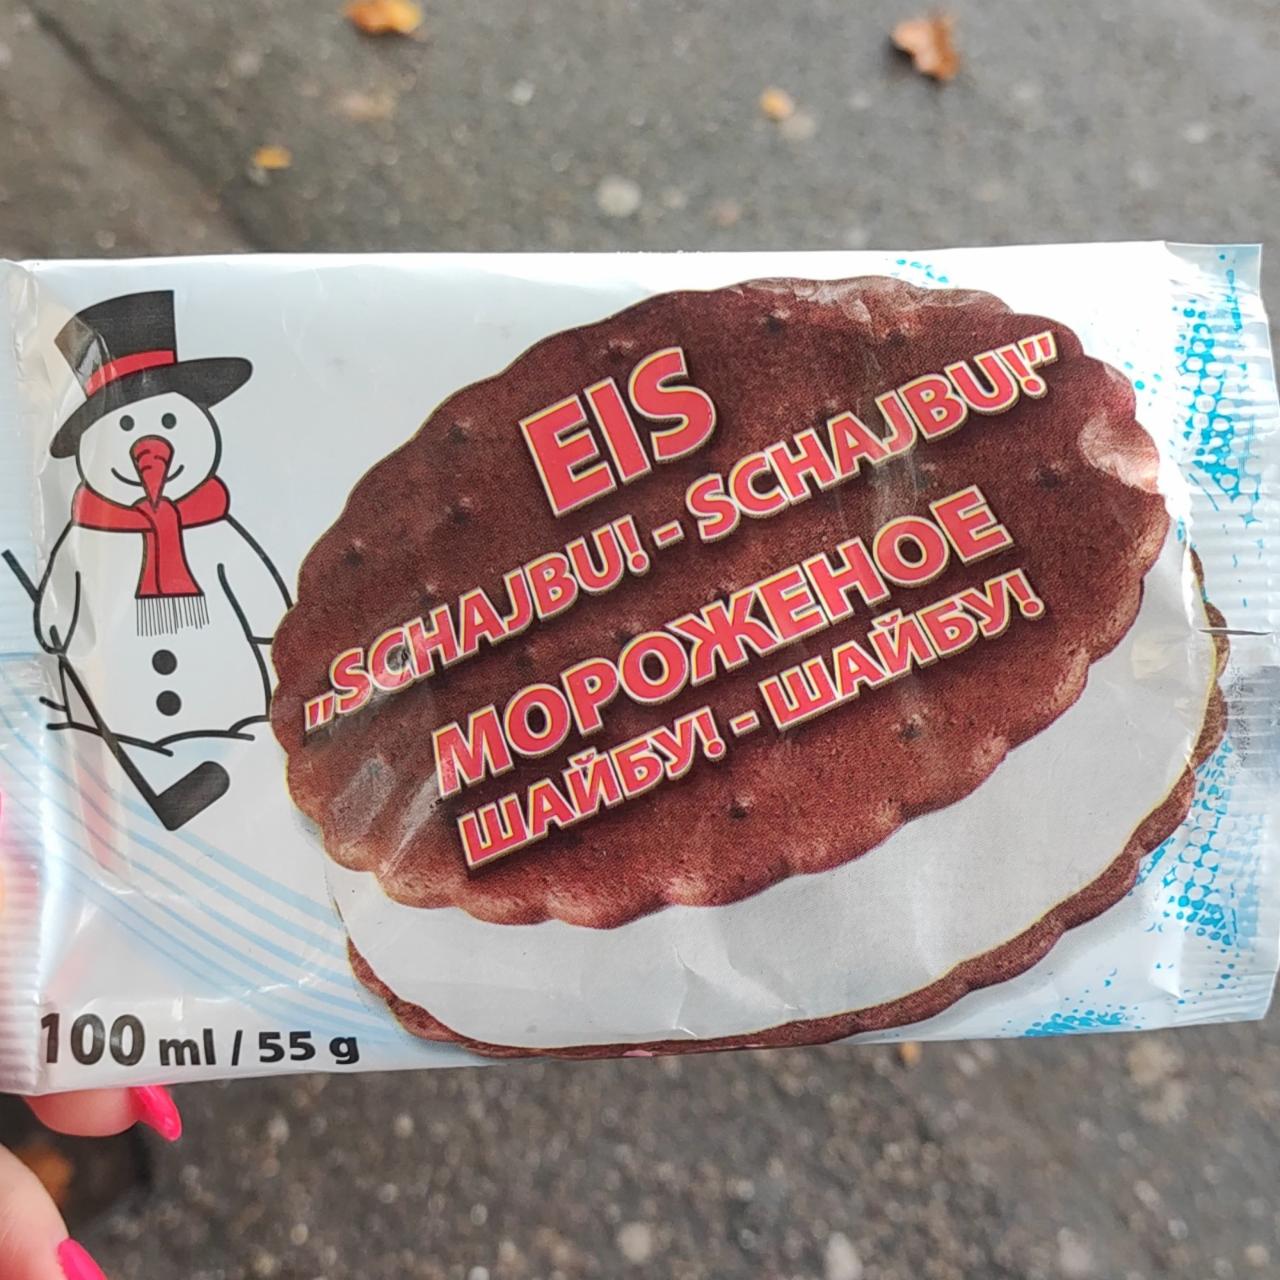 Fotografie - Eis 'Schajbu! - Schajbu!' zwischen kakaohaltigen Keksen